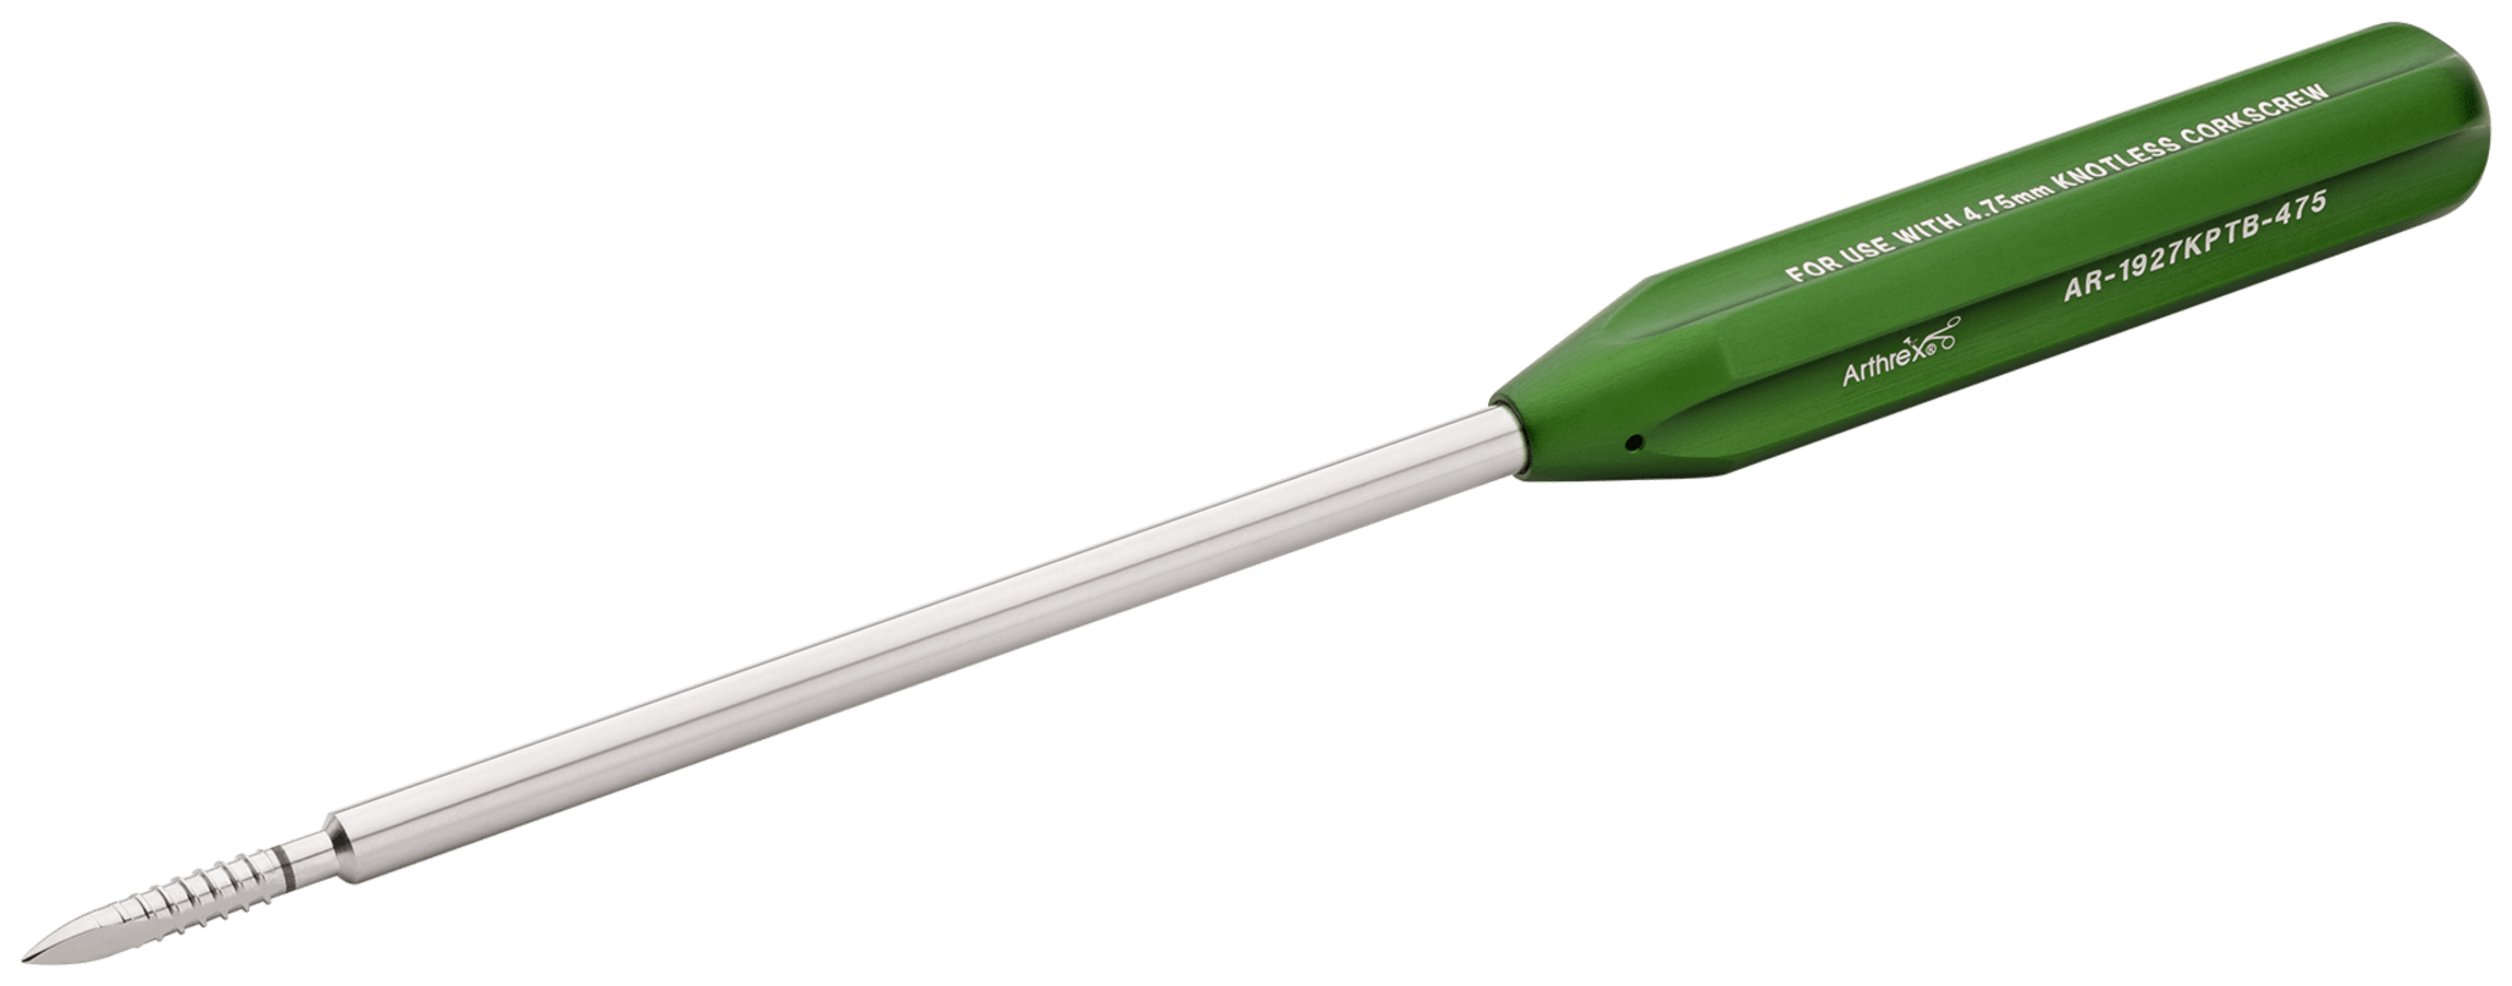 Punch / Gewindeschneider, für 4.75 mm Knotless Corkscrew